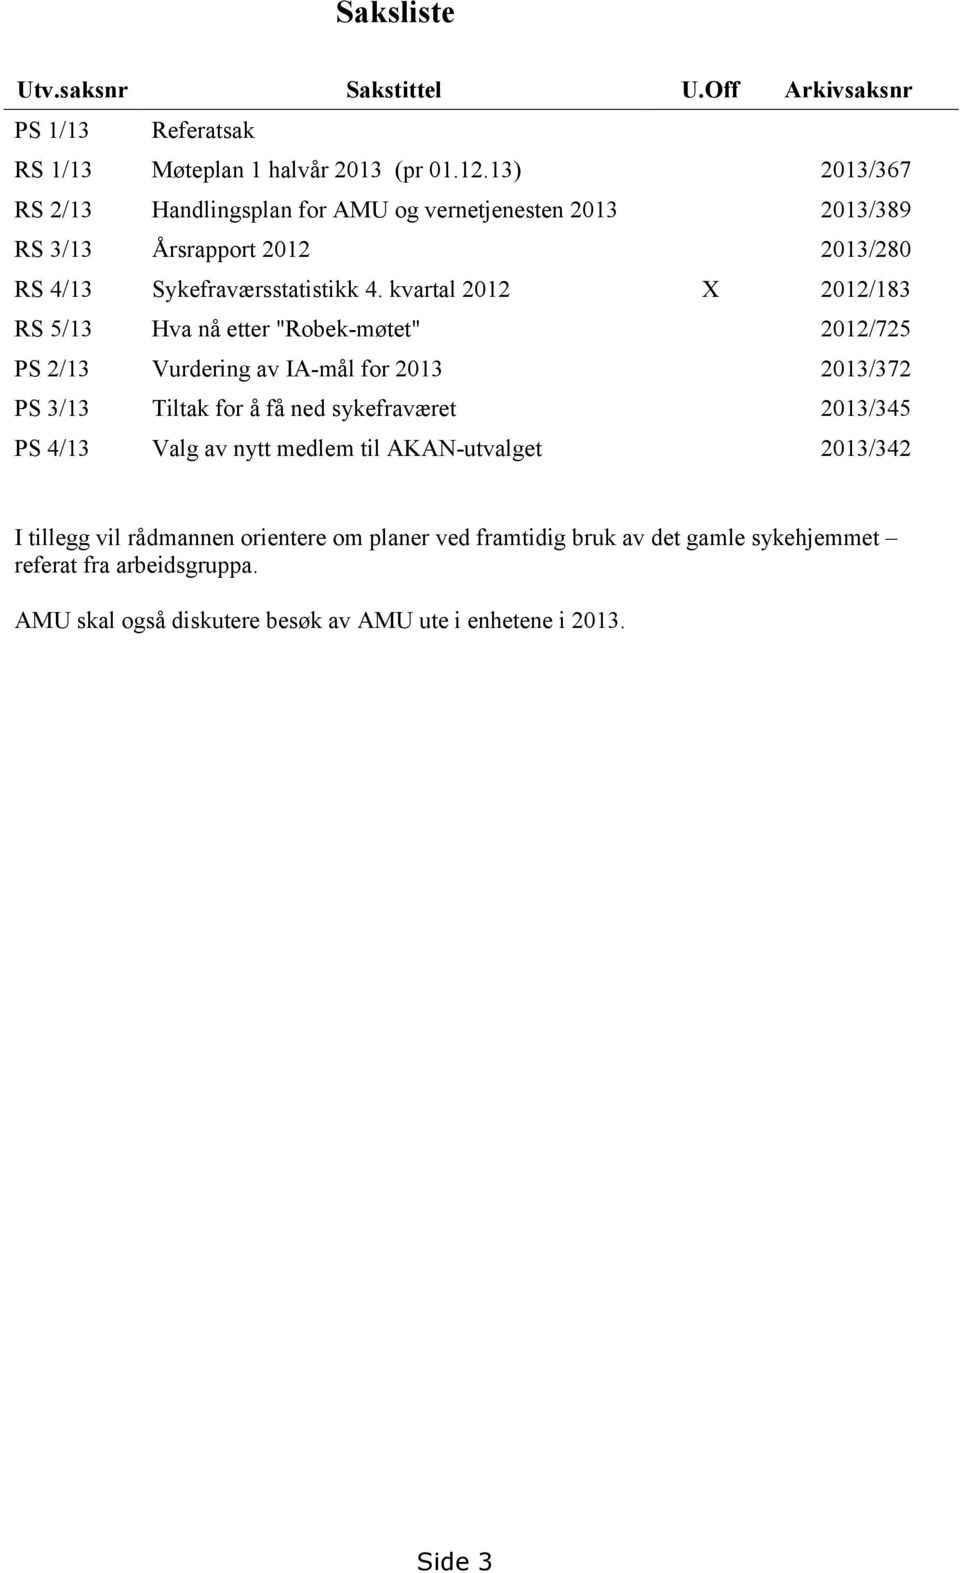 kvartal 2012 X 2012/183 RS 5/13 Hva nå etter "Robek-møtet" 2012/725 PS 2/13 Vurdering av IA-mål for 2013 2013/372 PS 3/13 Tiltak for å få ned sykefraværet